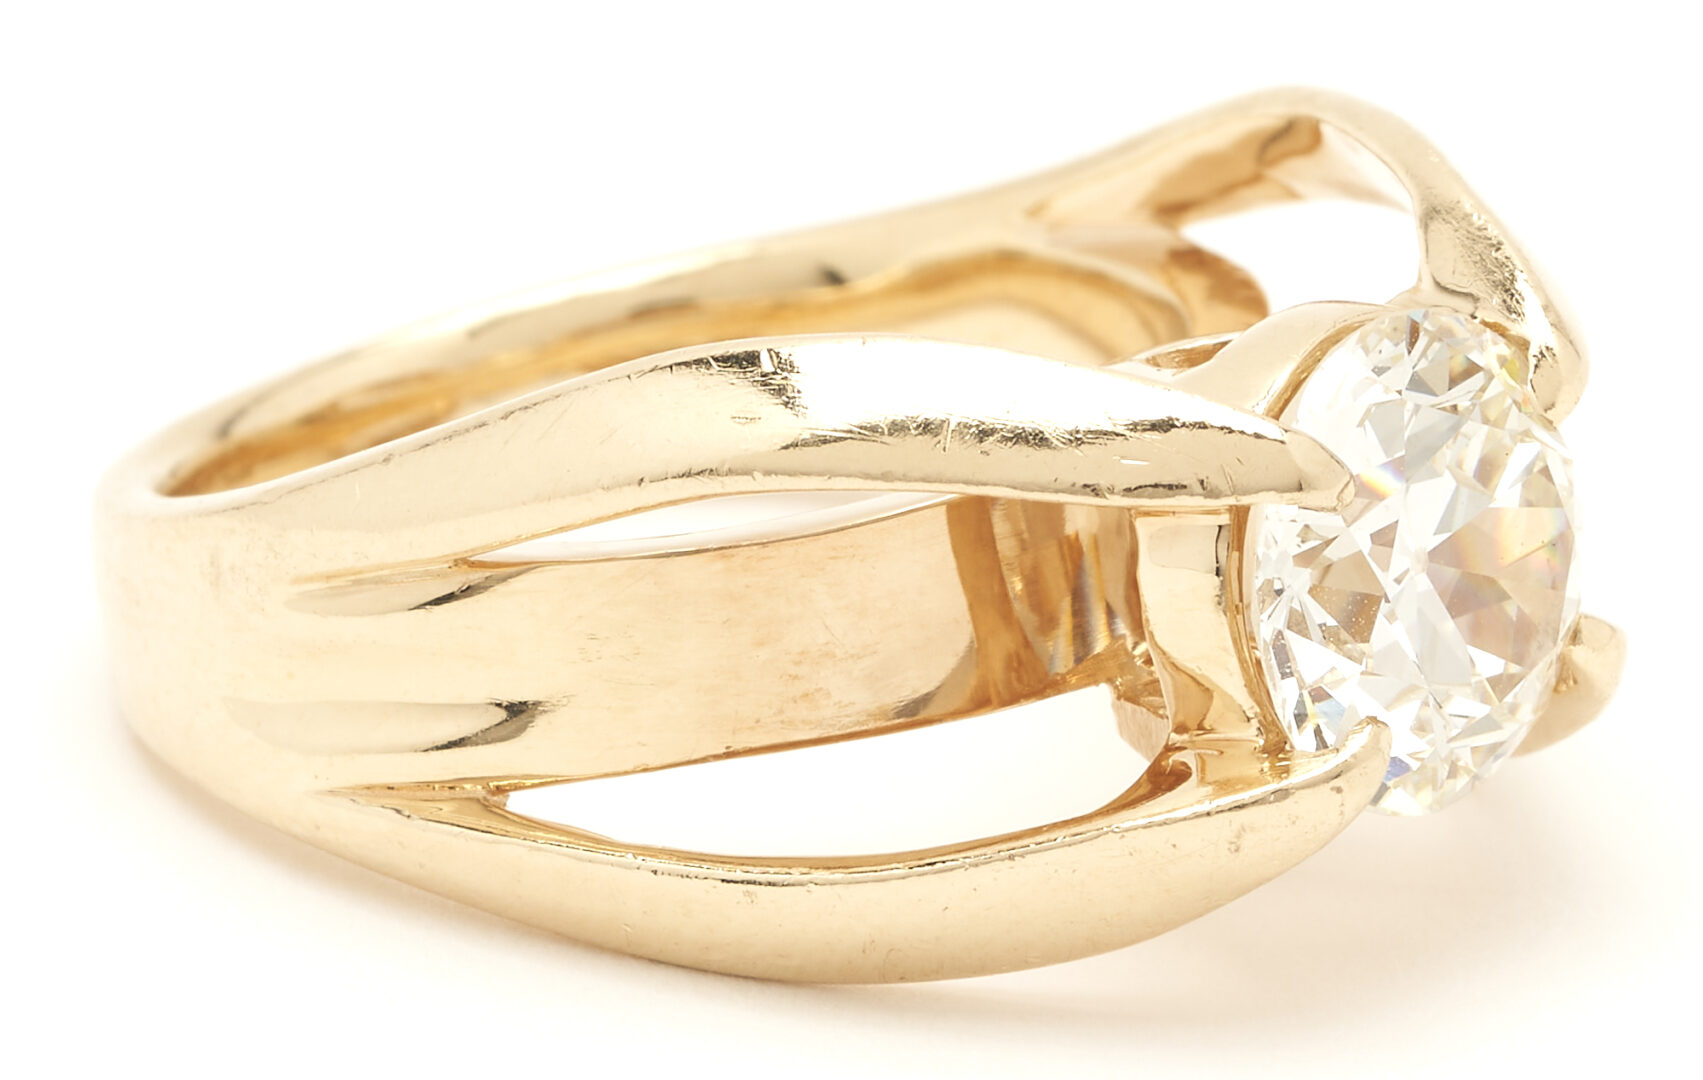 Lot 30: Ladies 2.20 Carat Euro Diamond Solitaire Ring, GIA Report